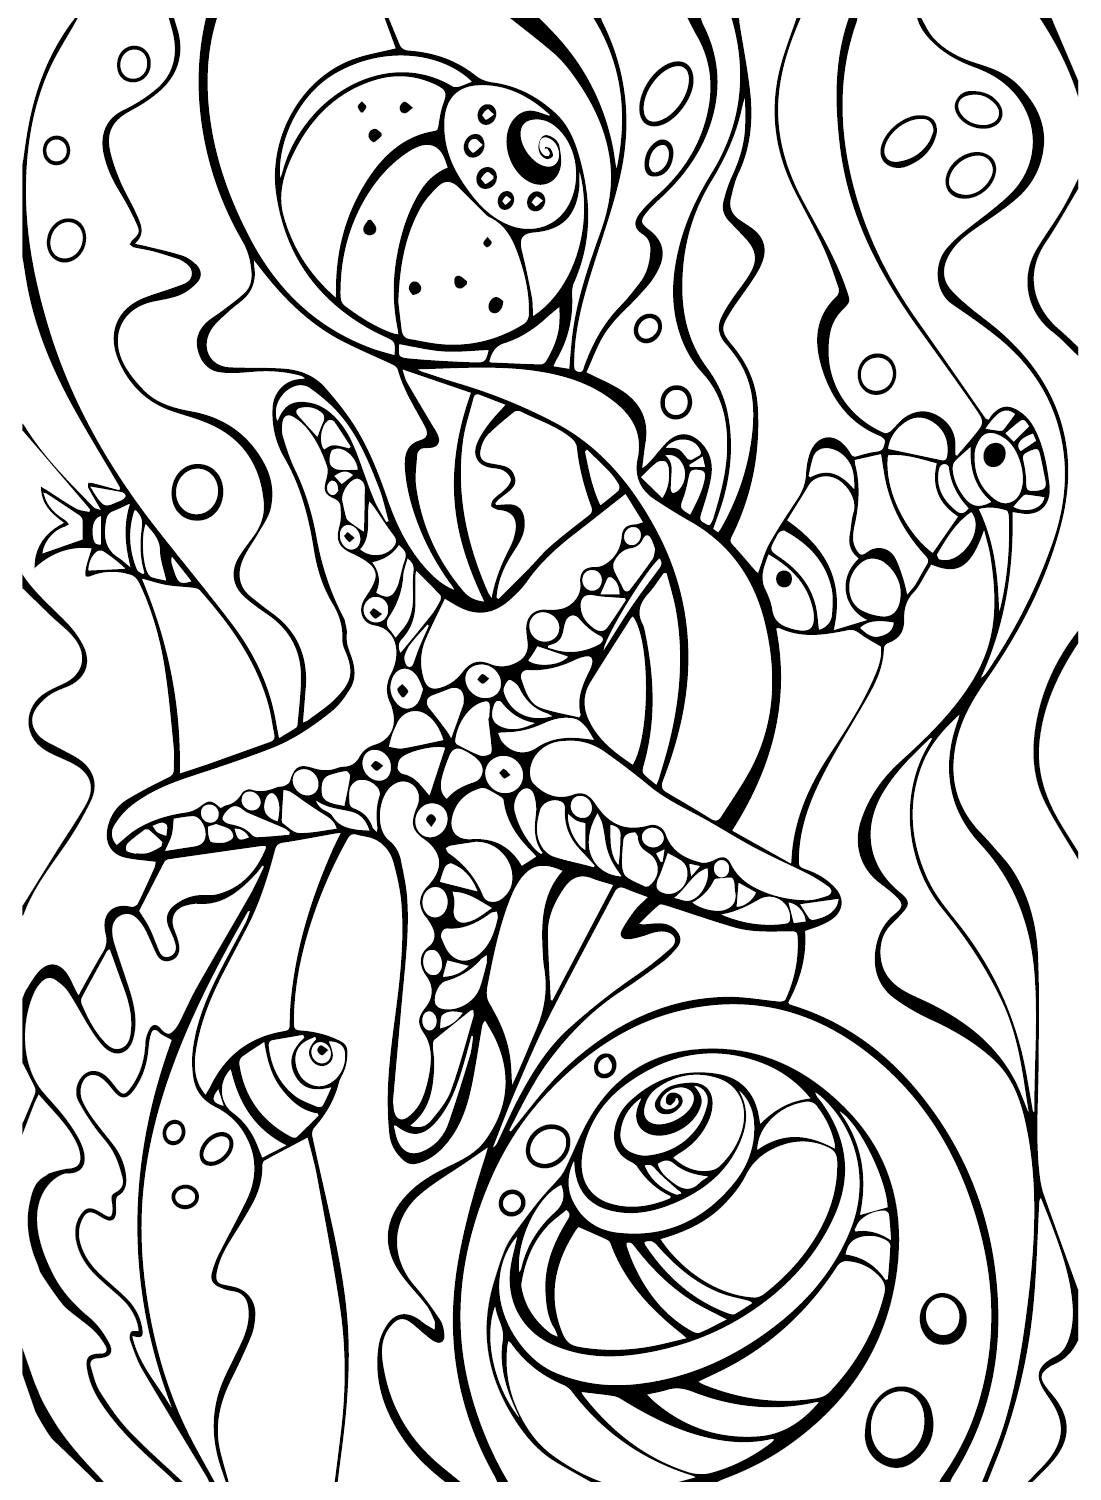 Folhas coloridas de estrela do mar da Starfish